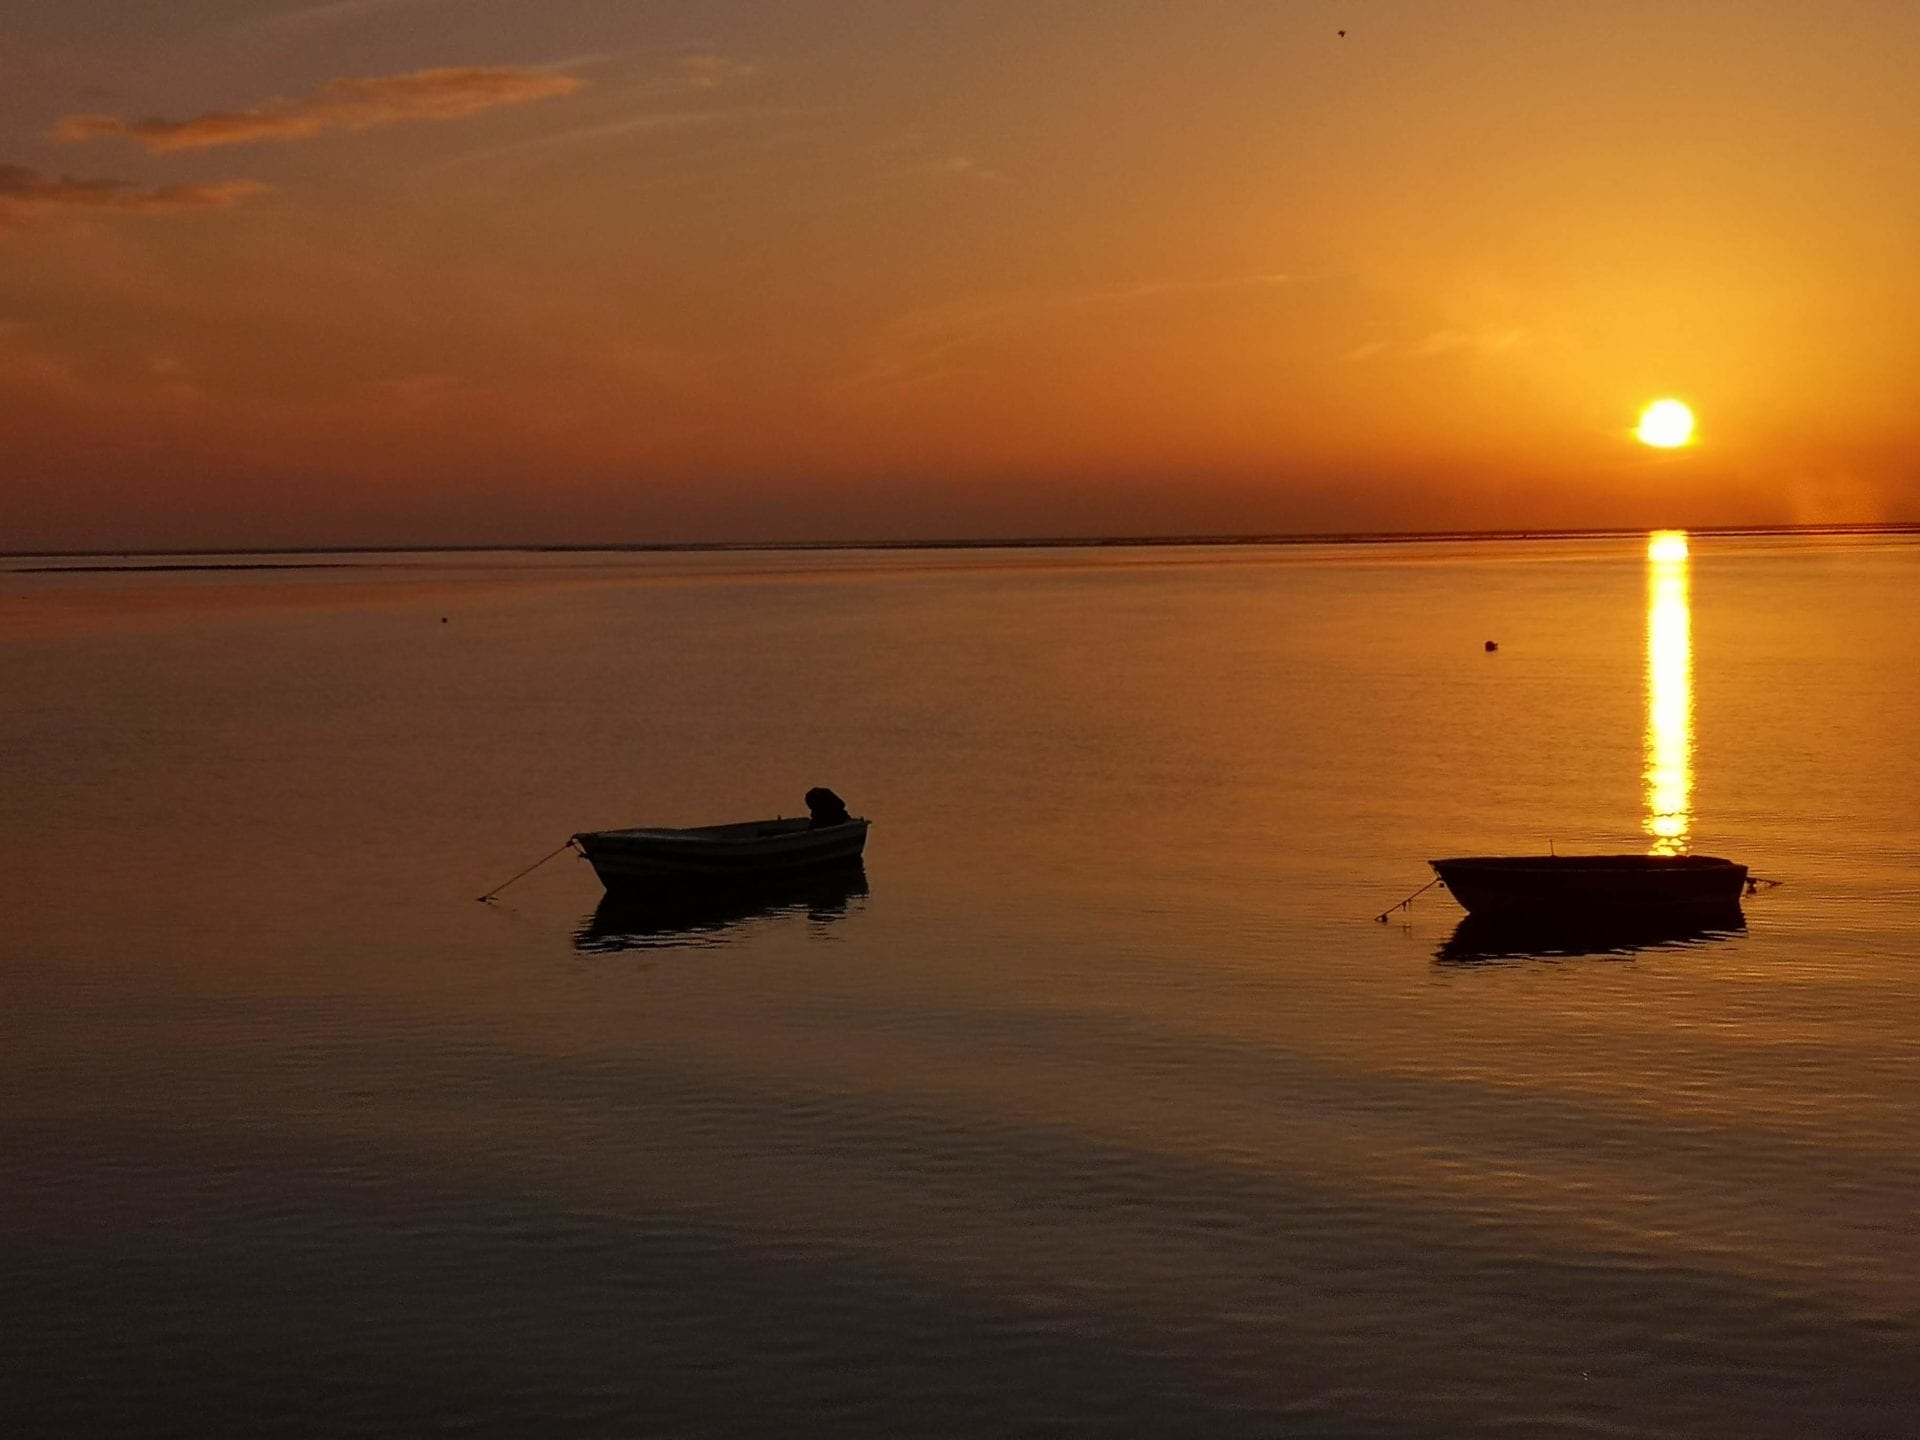 Passeio de Barco Sunset de Olhao na Ria Formosa